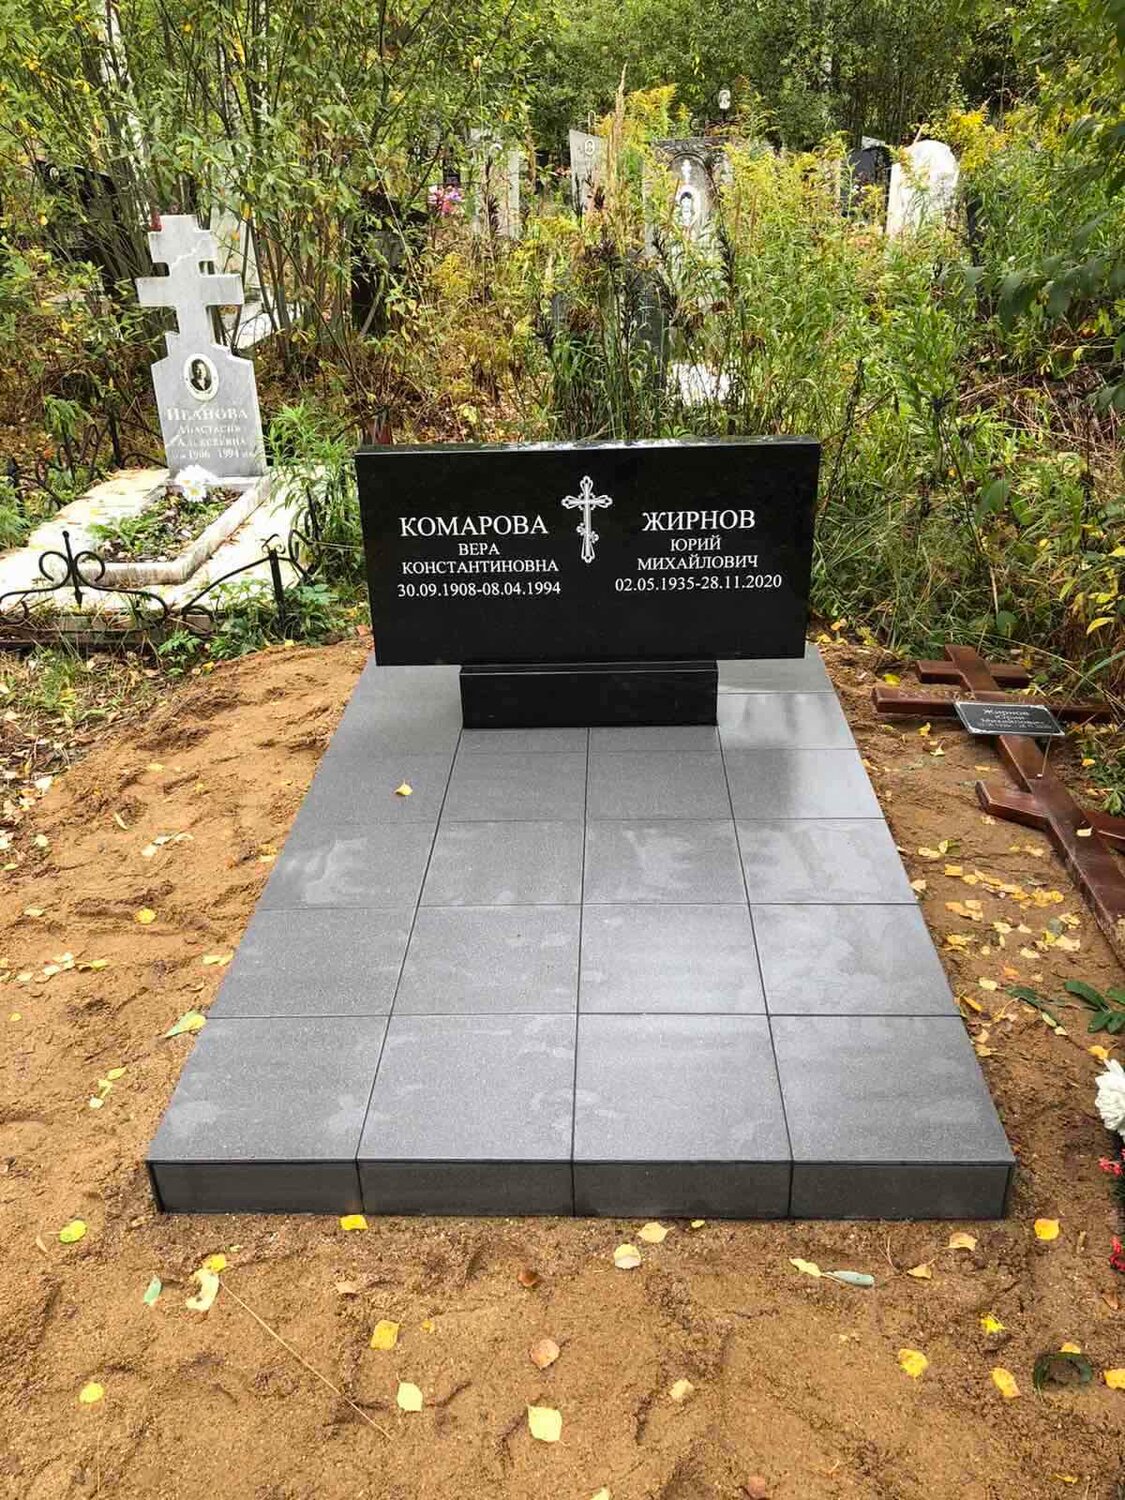 Благоустройство могил в Иванове: 20 граверов со средним рейтингом 4.5 с отзывами и ценами на Яндекс Услугах.